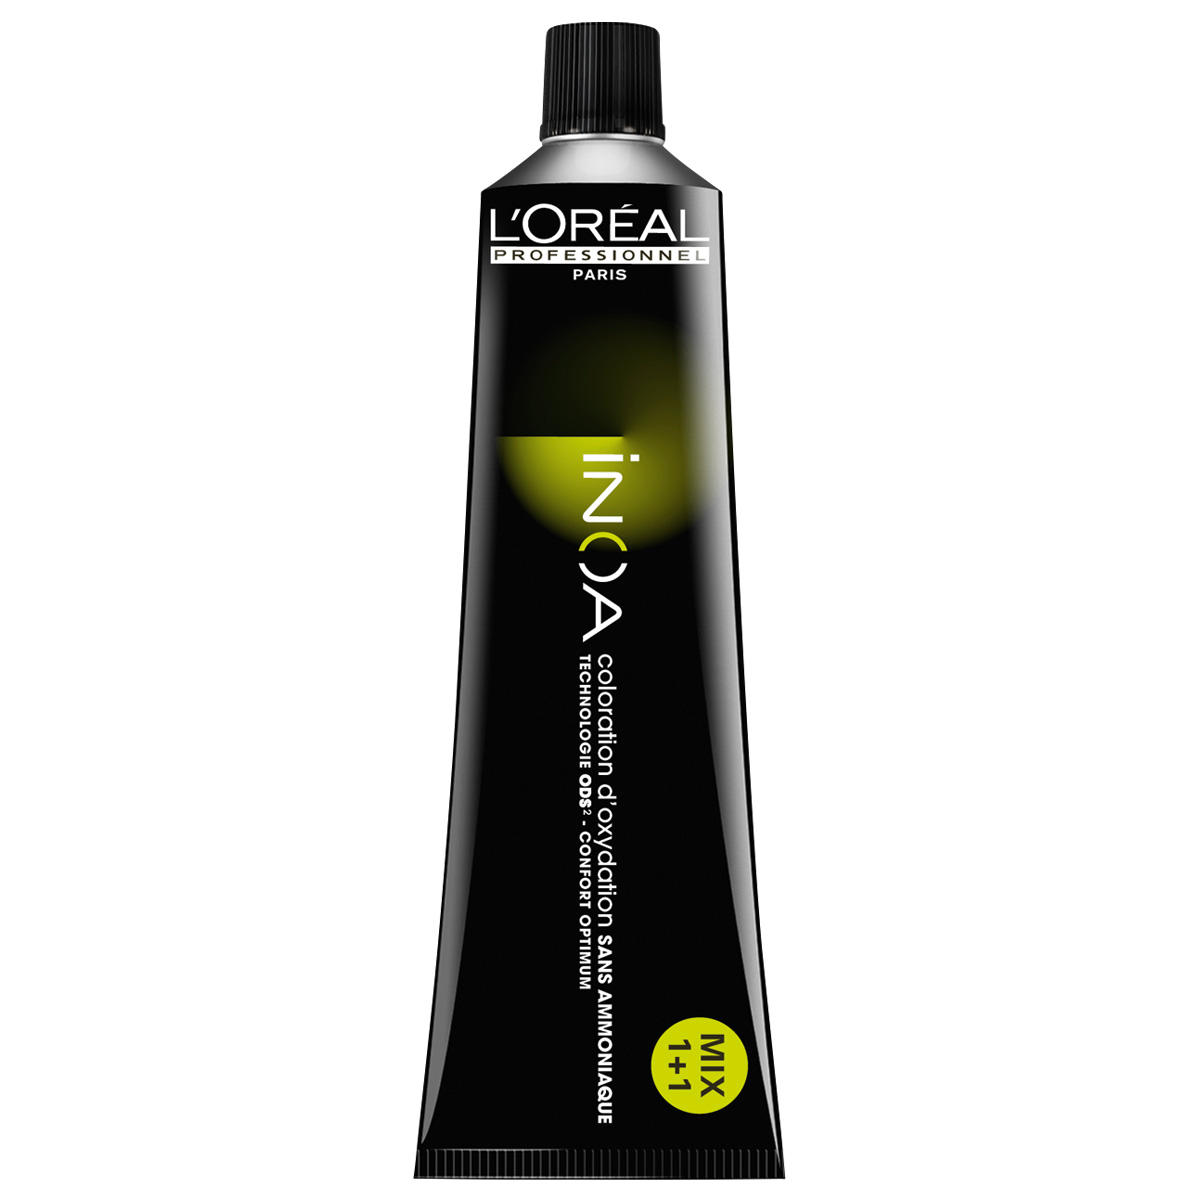 L'Oréal Professionnel Paris Coloration 5.4 Rame marrone chiaro, tubo 60 ml